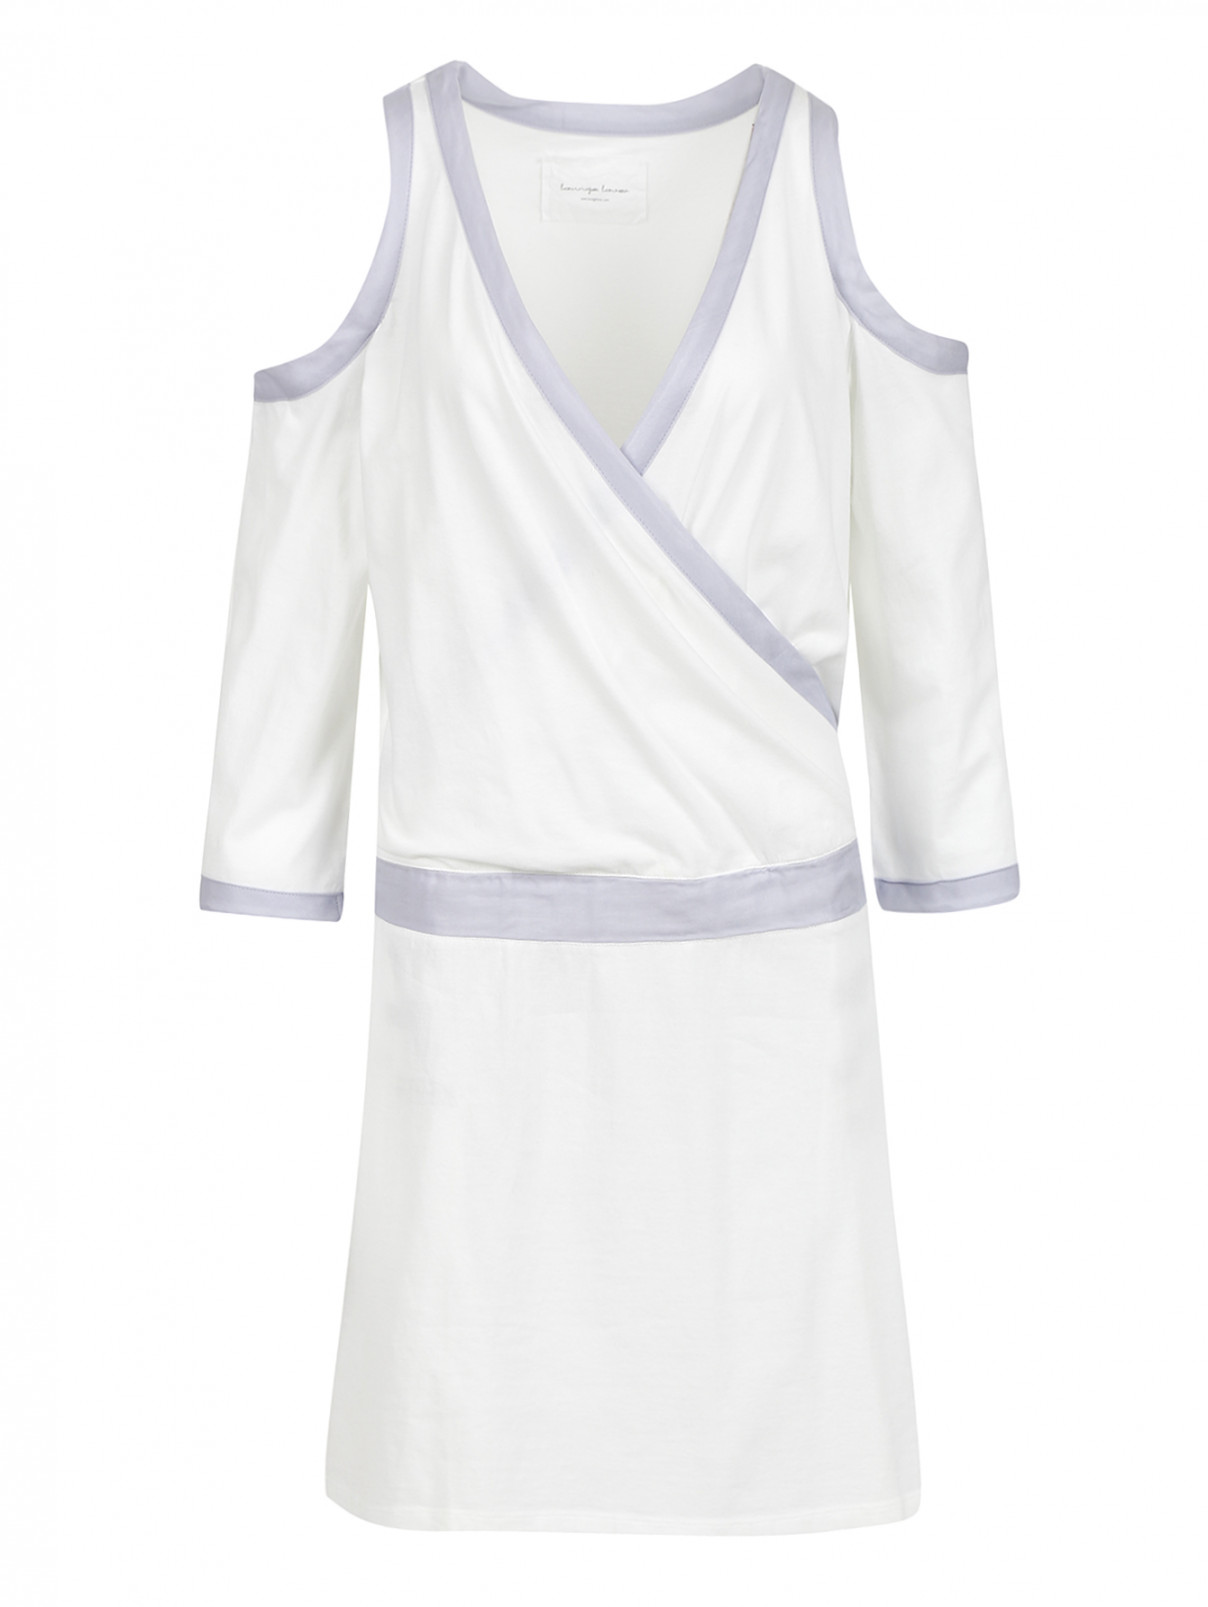 Платье с открытыми плечами из хлопка и шелка Lounge Lover  –  Общий вид  – Цвет:  Белый